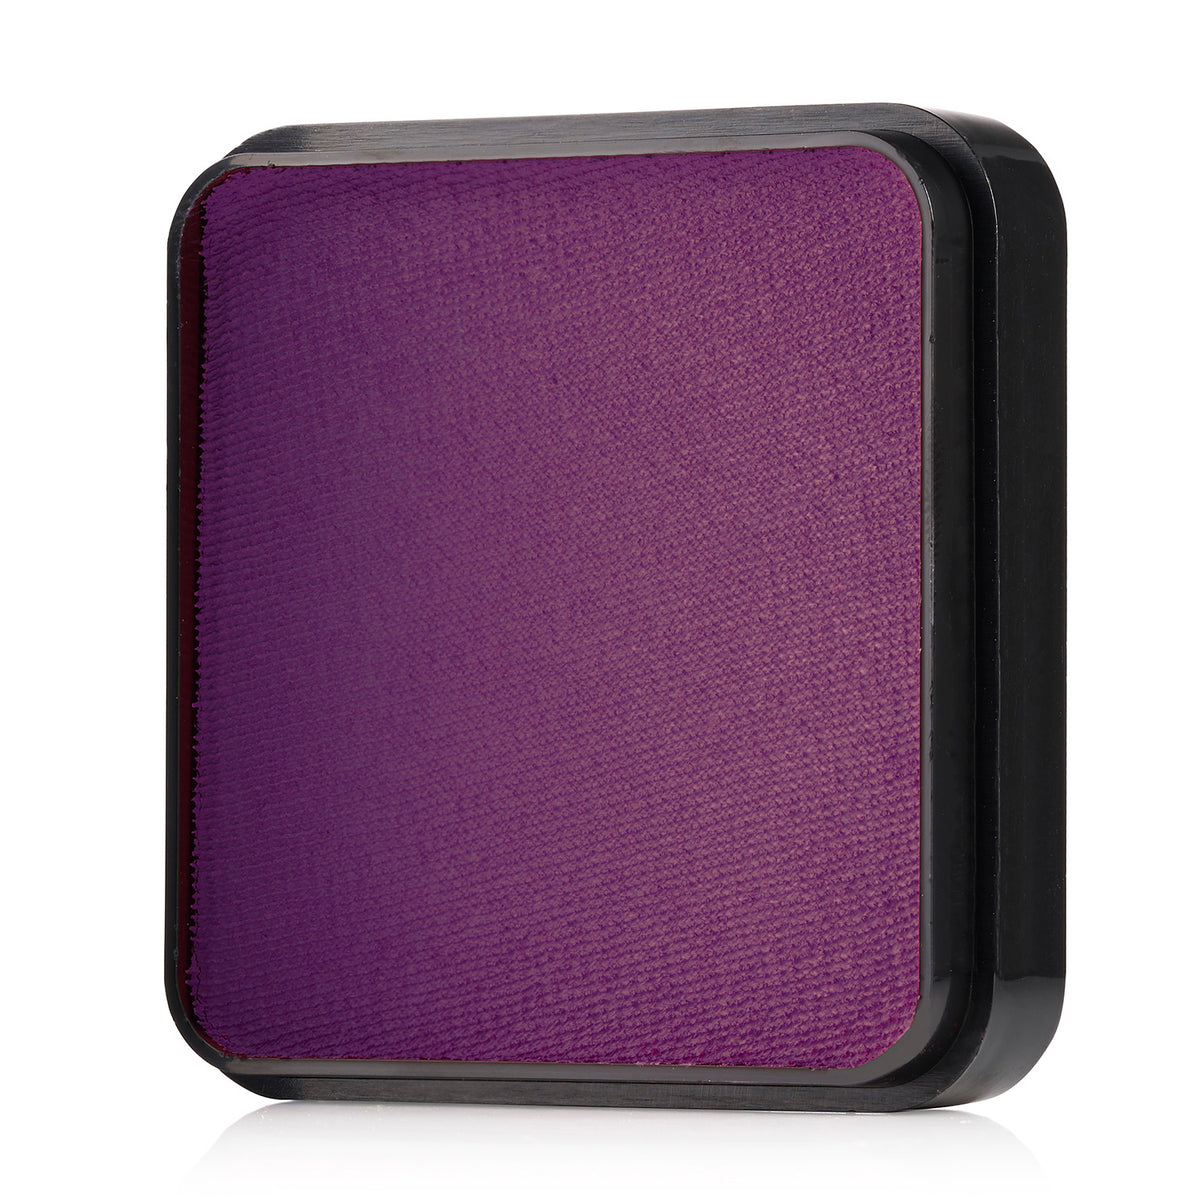 Kraze FX Face Paint - Violet (25 gm)